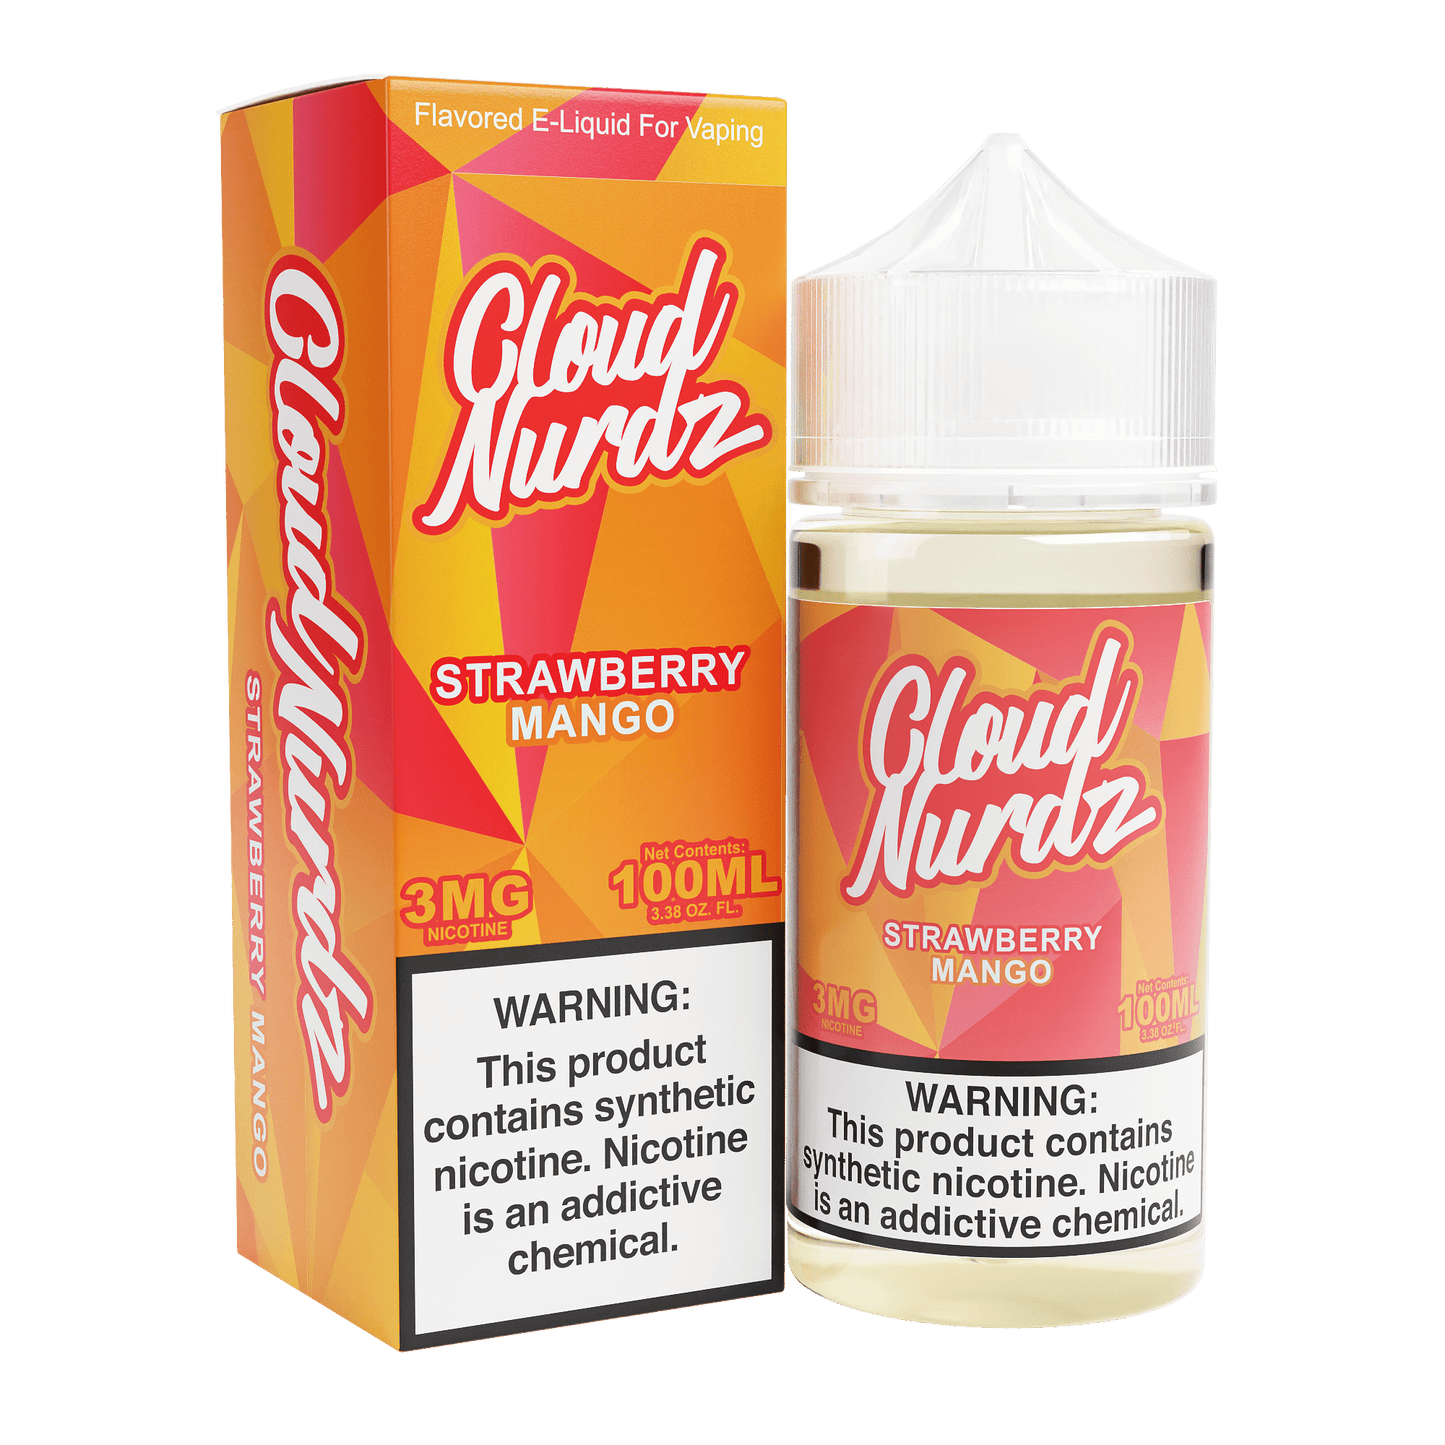 Cloud Nurdz: Strawberry Mango